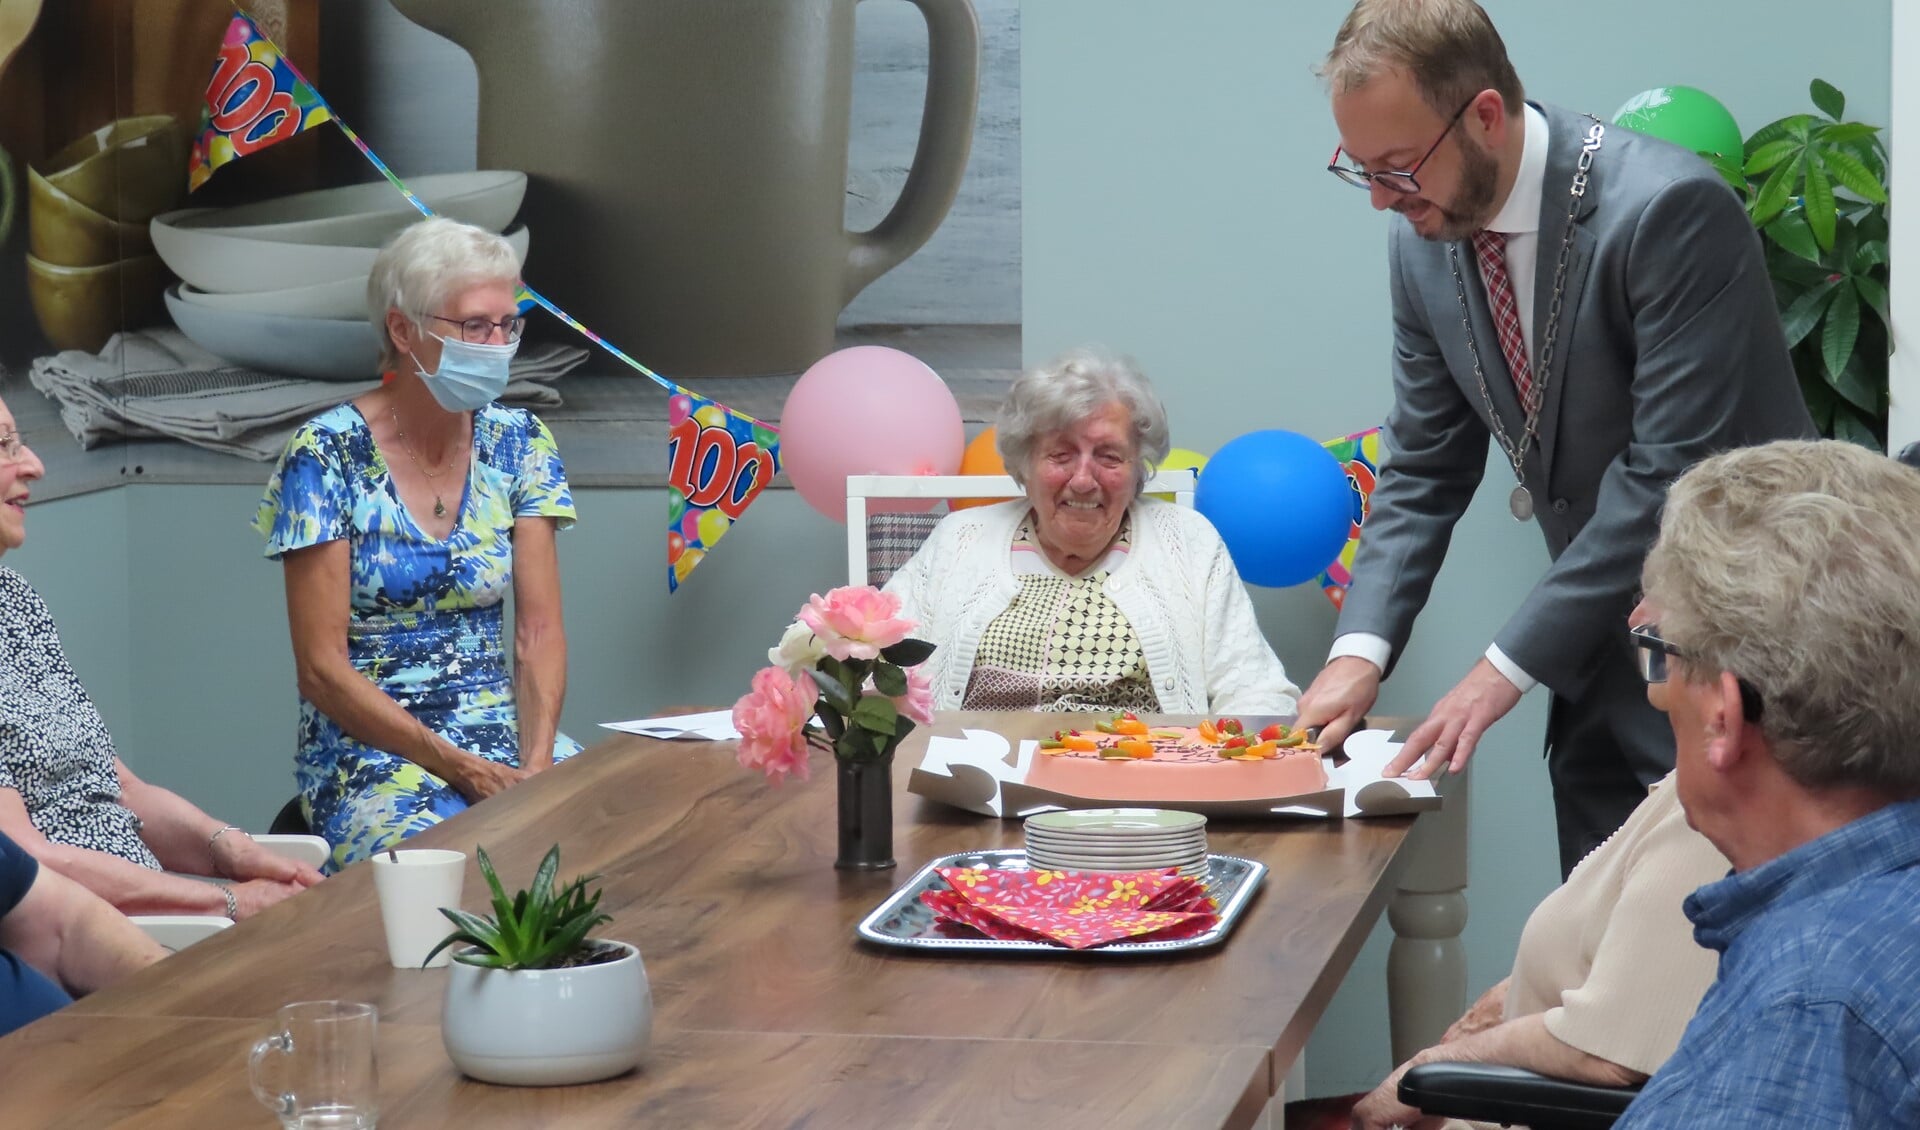 De burgemeester snijdt de verjaardagstaart aan voor de 100-jarige Maartje.